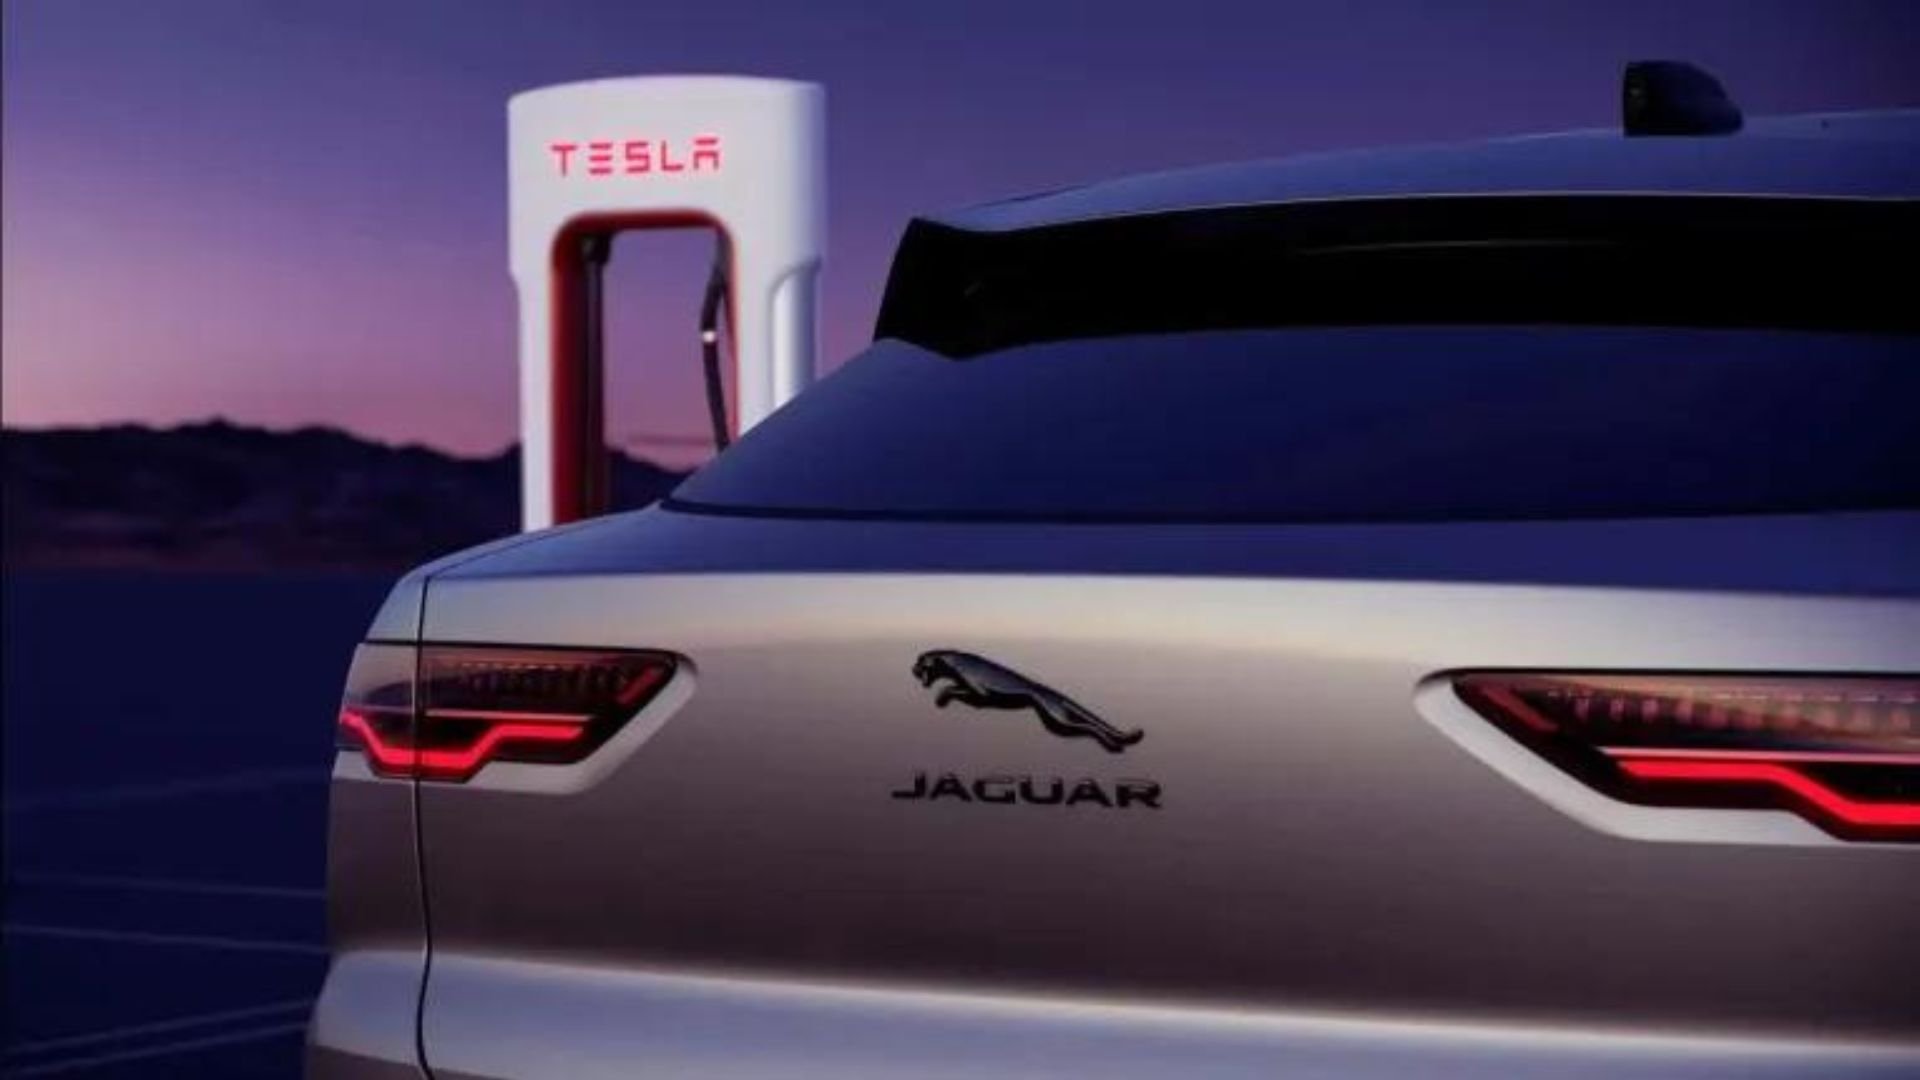 H Jaguar θα έχει πρόσβαση σε Tesla Supercharger